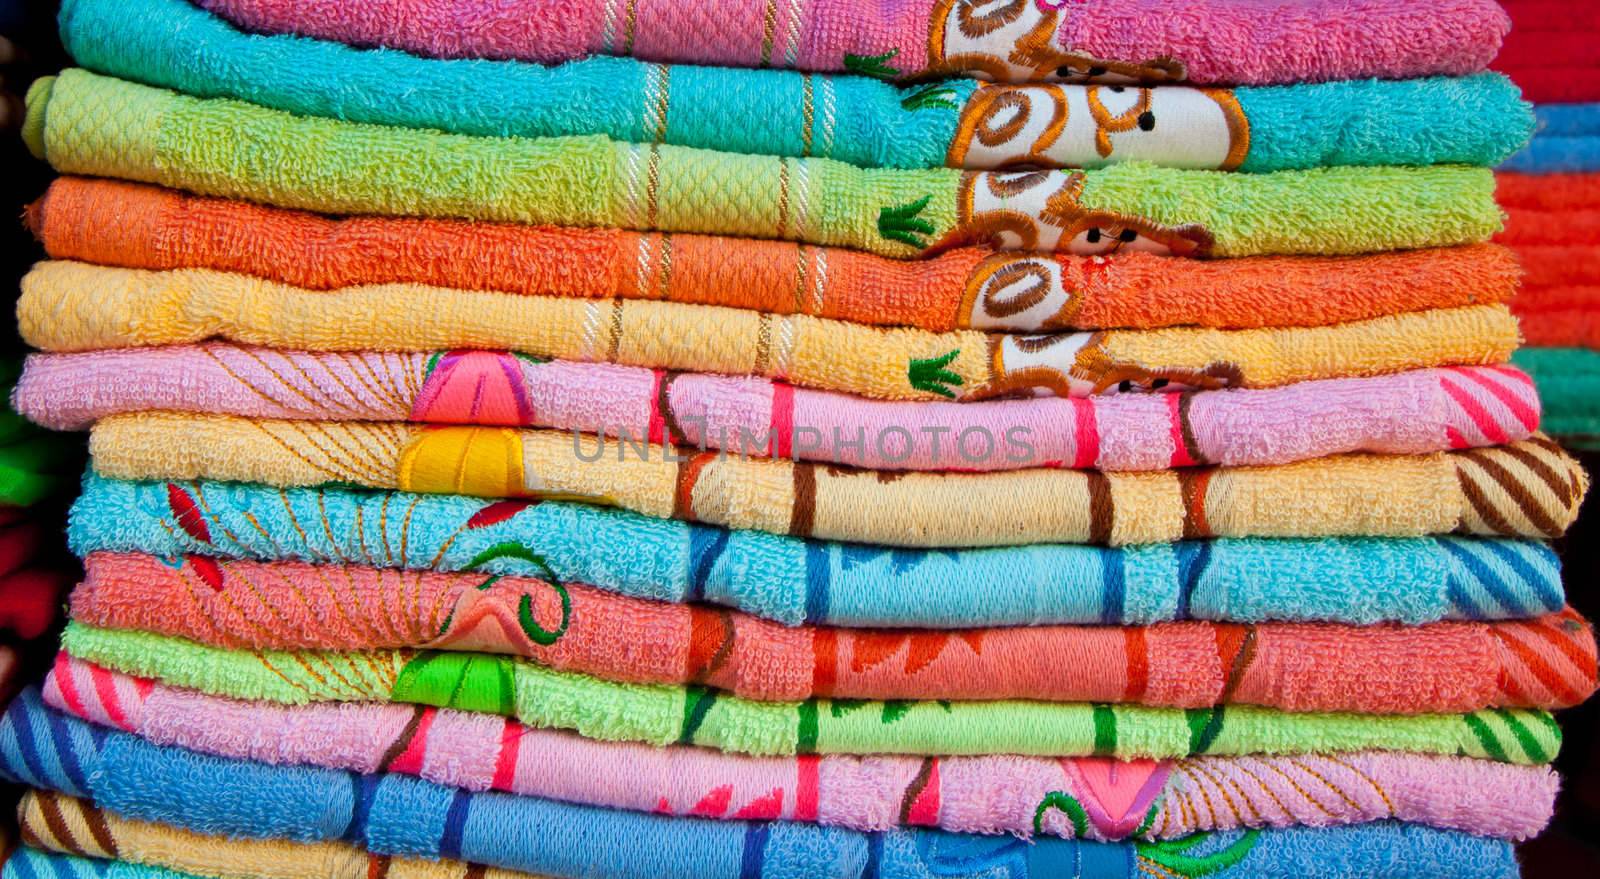 towel stack by koratmember